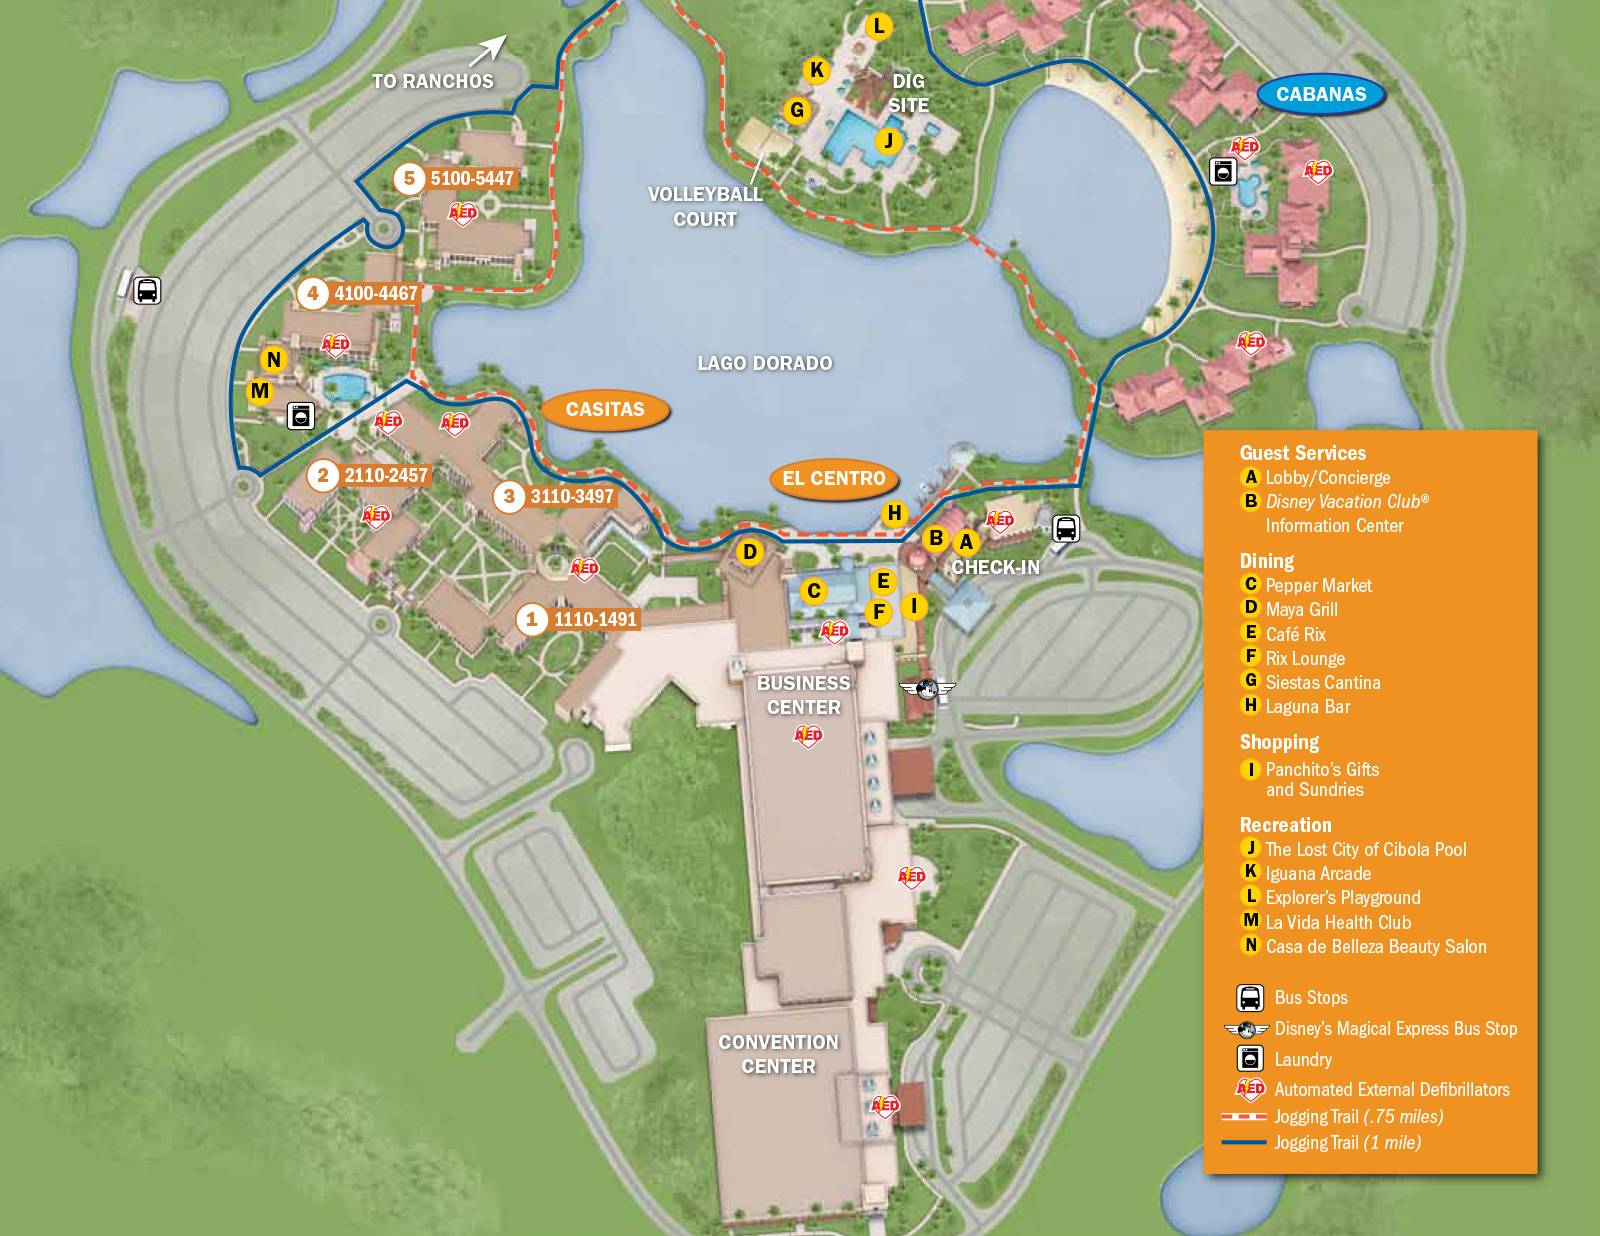 New 2013 Coronado Springs Resort map - Casitas and El Centro